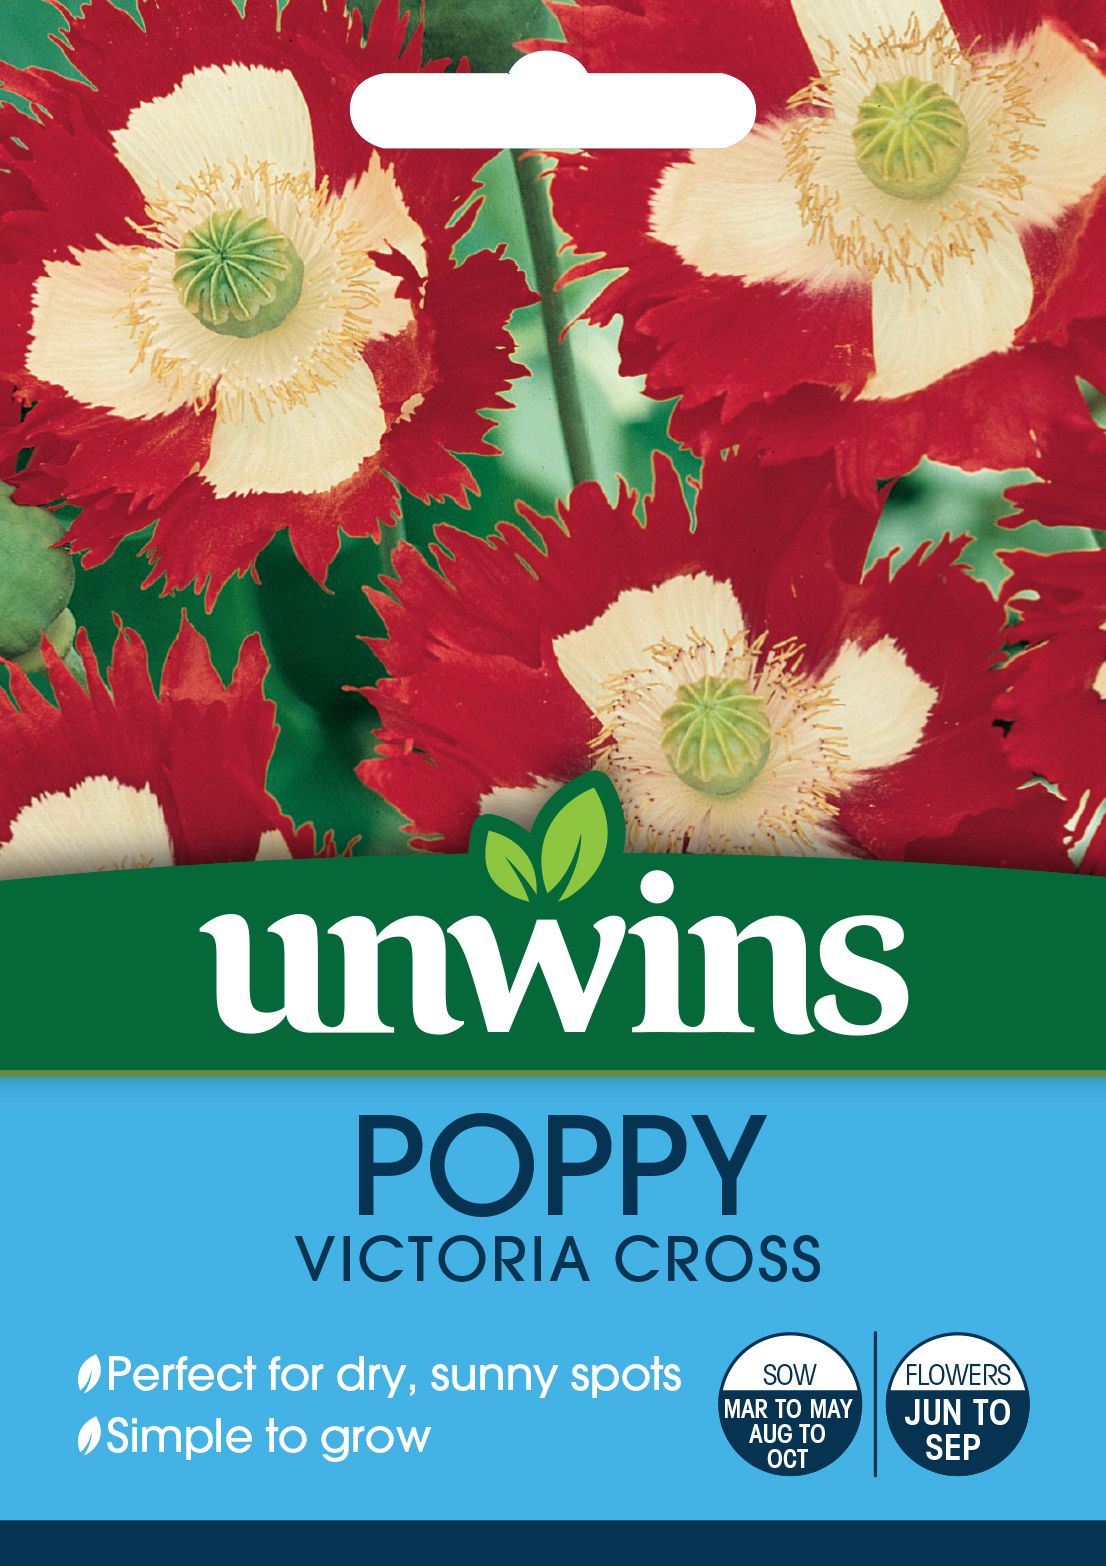 Poppy Victoria Cross